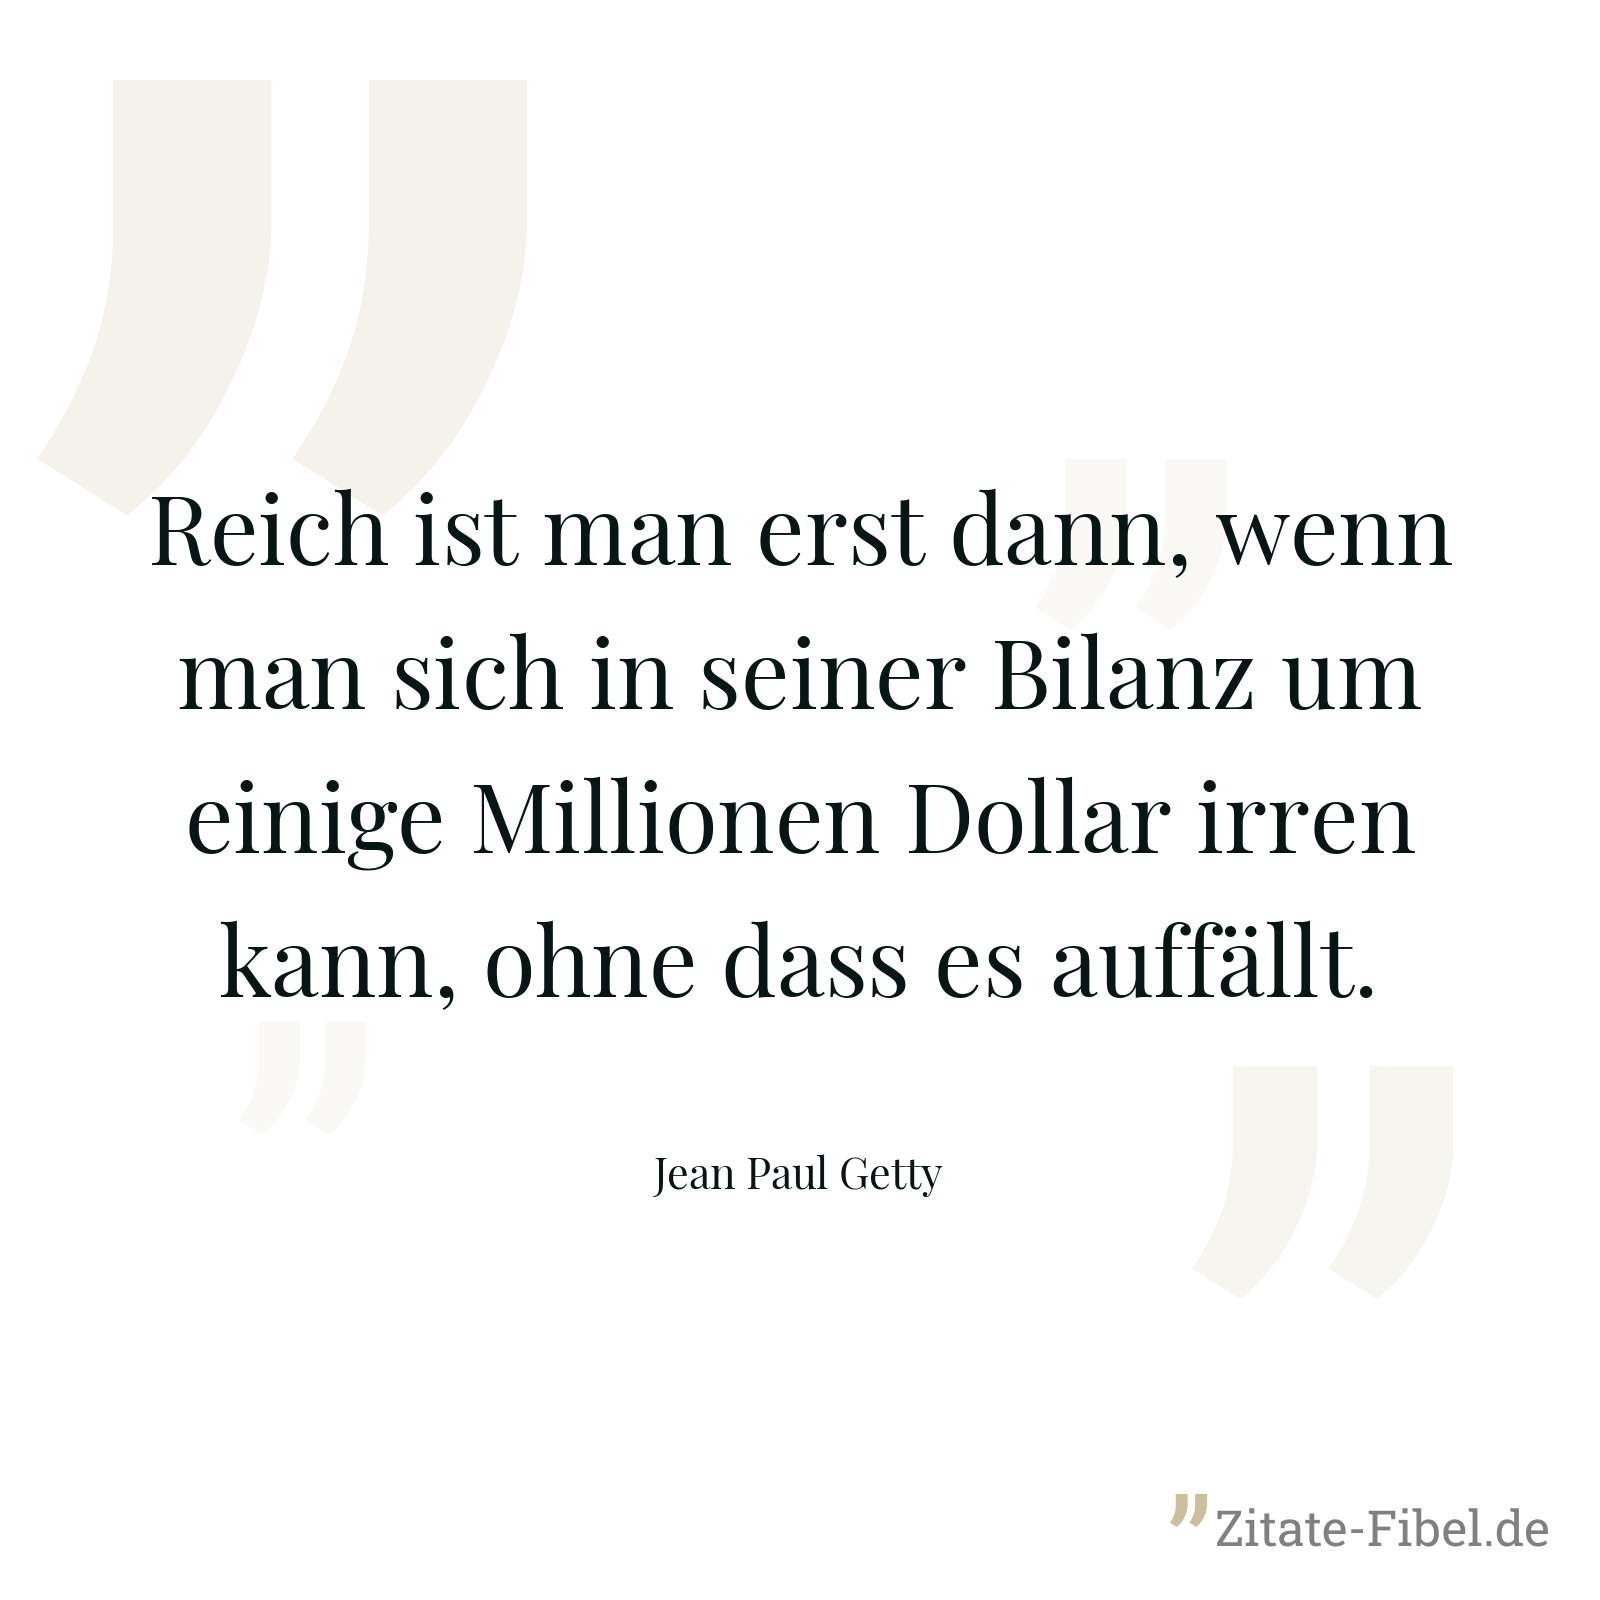 Reich ist man erst dann, wenn man sich in seiner Bilanz um einige Millionen Dollar irren kann, ohne dass es auffällt. - Jean Paul Getty